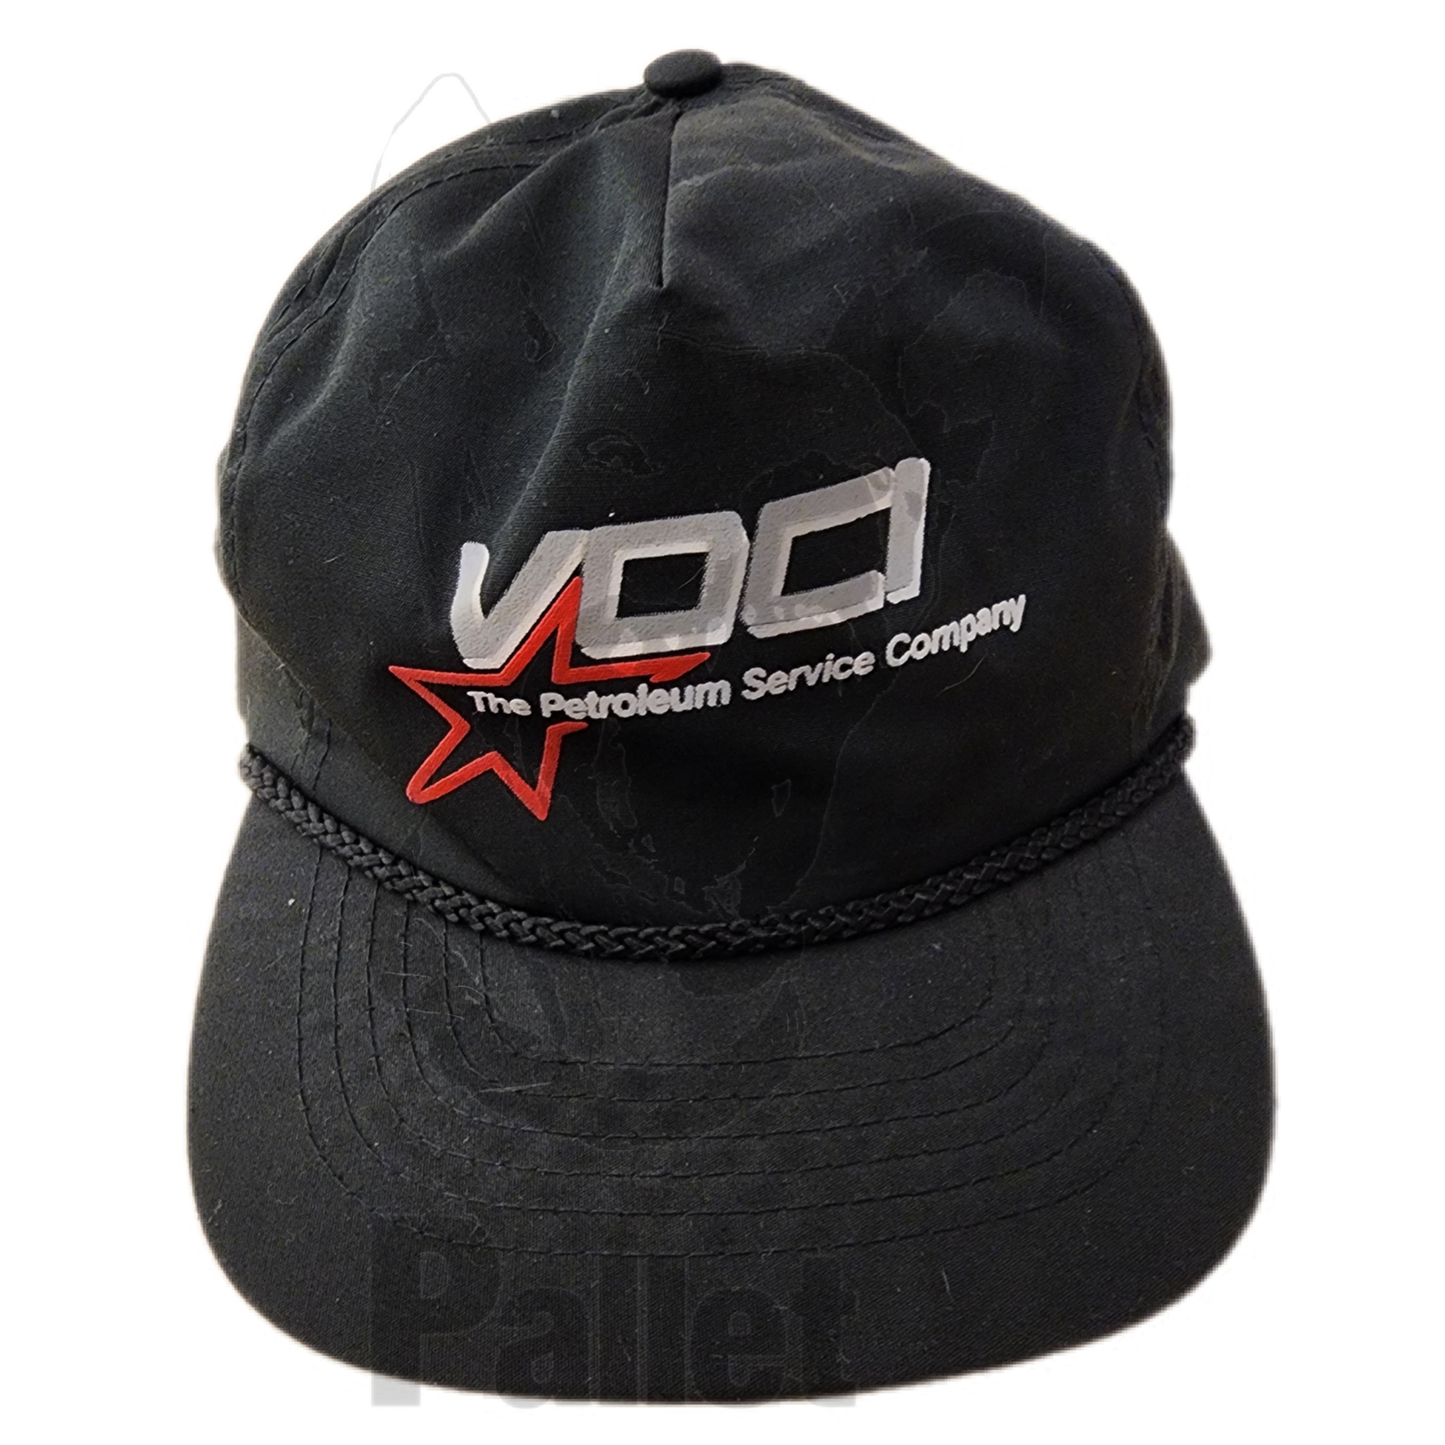 Vintage - "Vocl Black Hat"